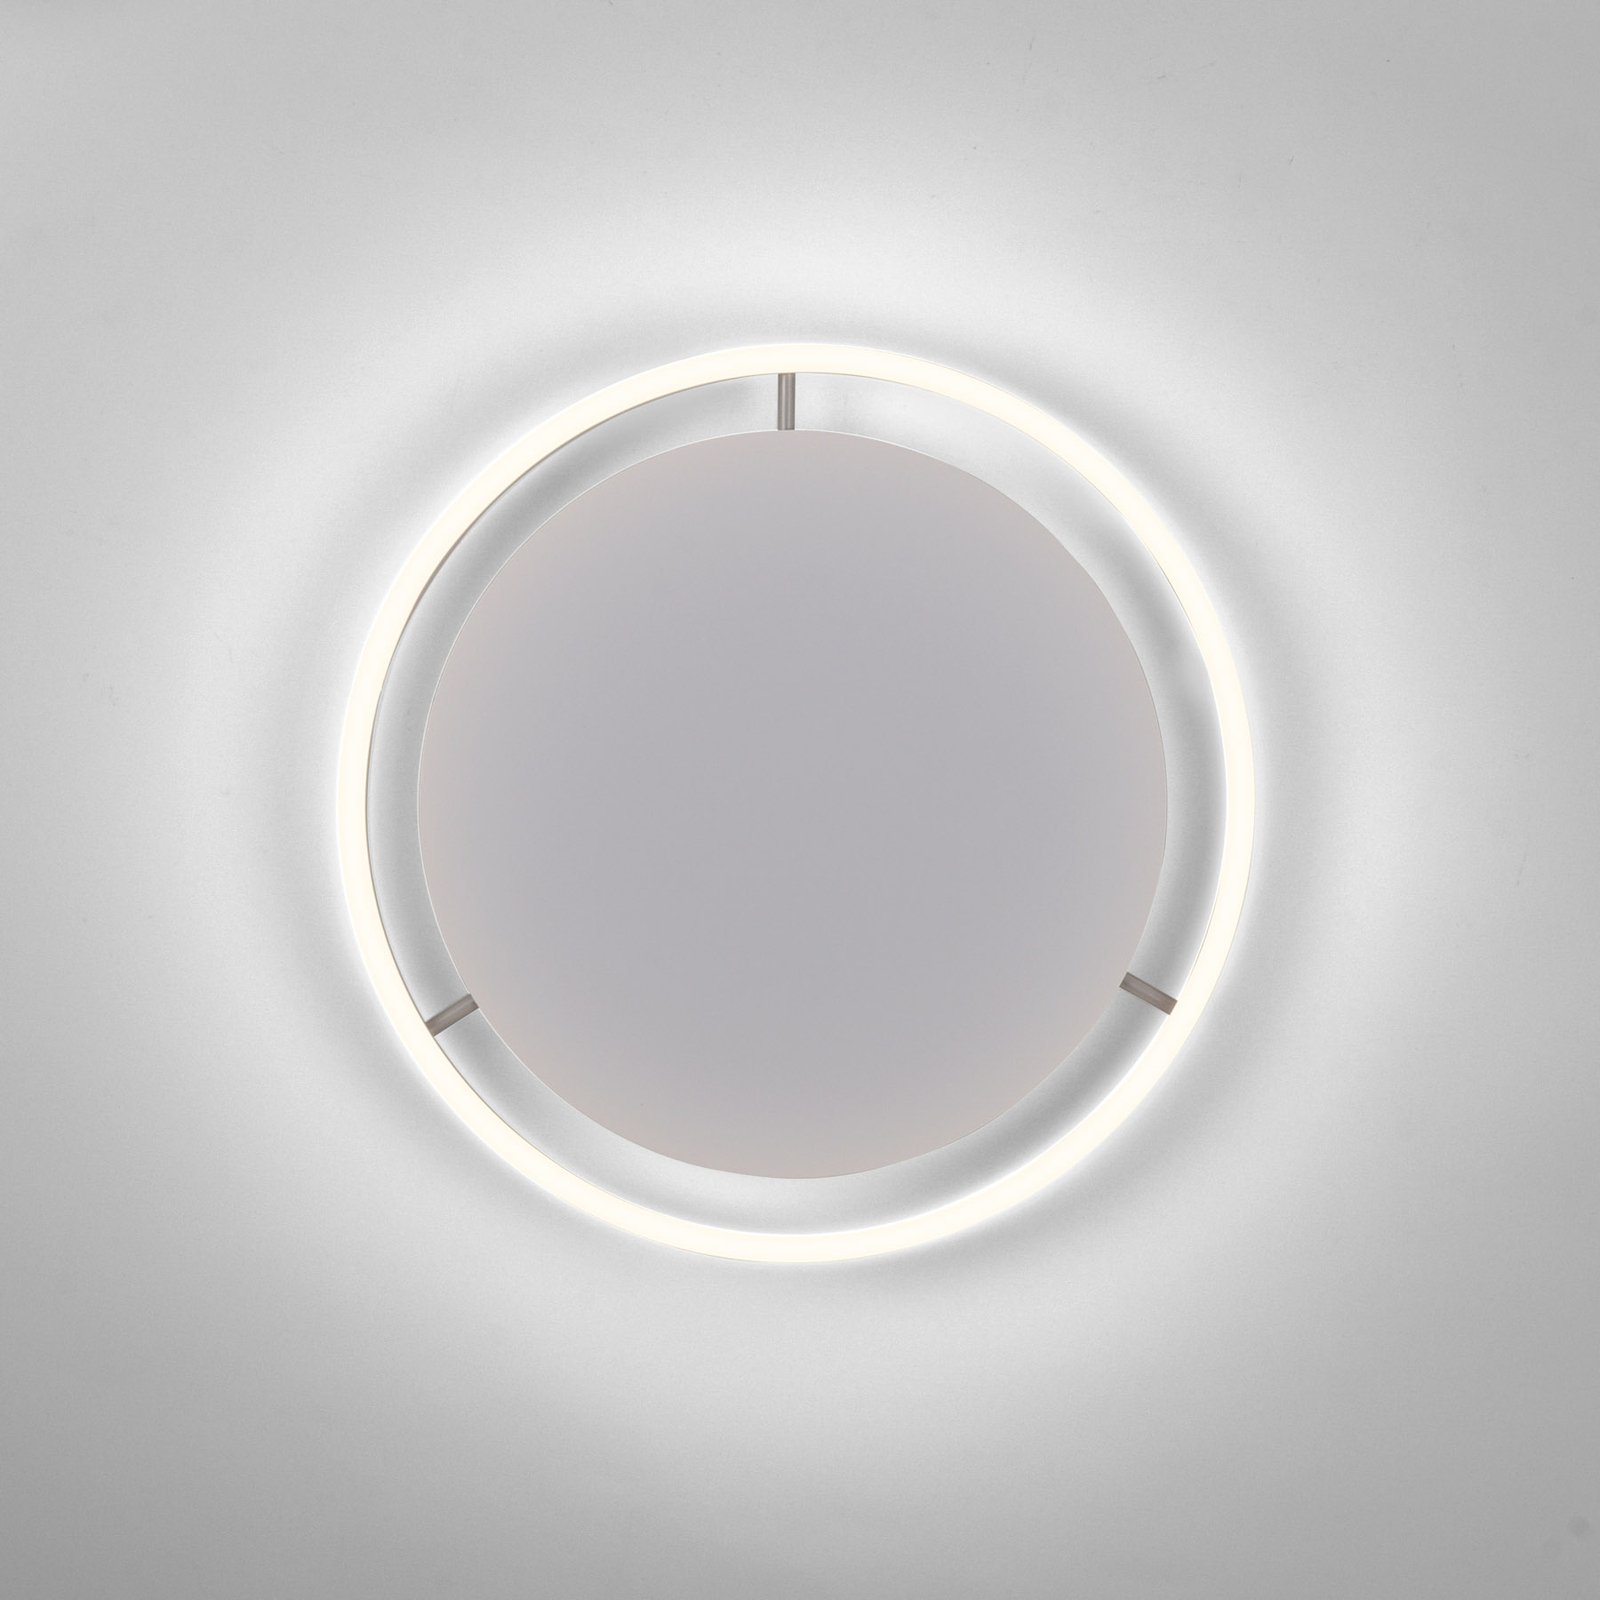 LED ceiling light Ritus, Ø 39.3cm, aluminium